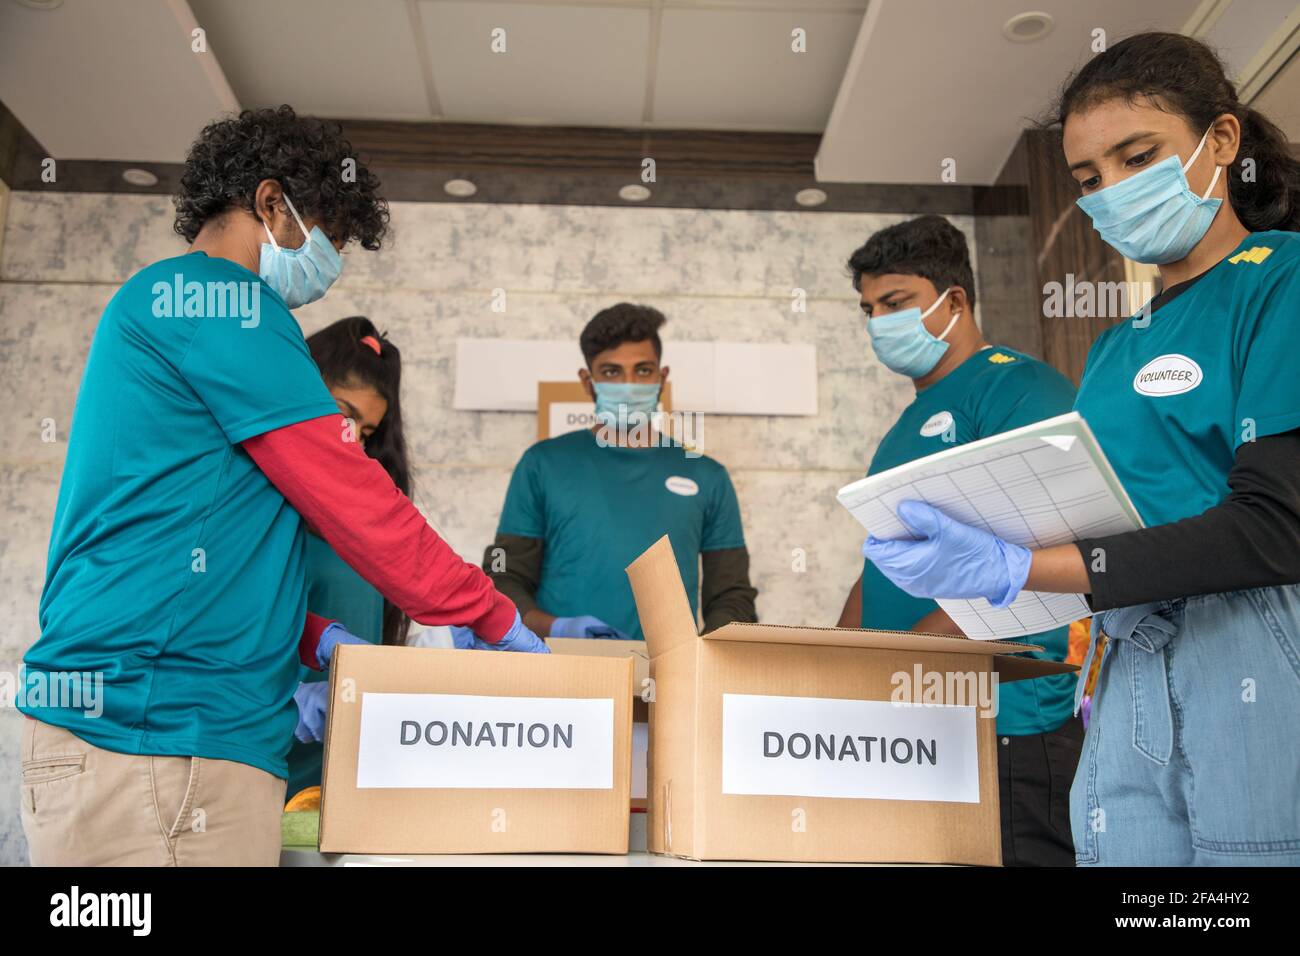 Foco en la muchacha delantera, grupo de voluntarios ocupados trabajando arreglando la ropa y las cajas de la donación durante el cierre pandémico del covid-19 del coronavirus - concepto Foto de stock